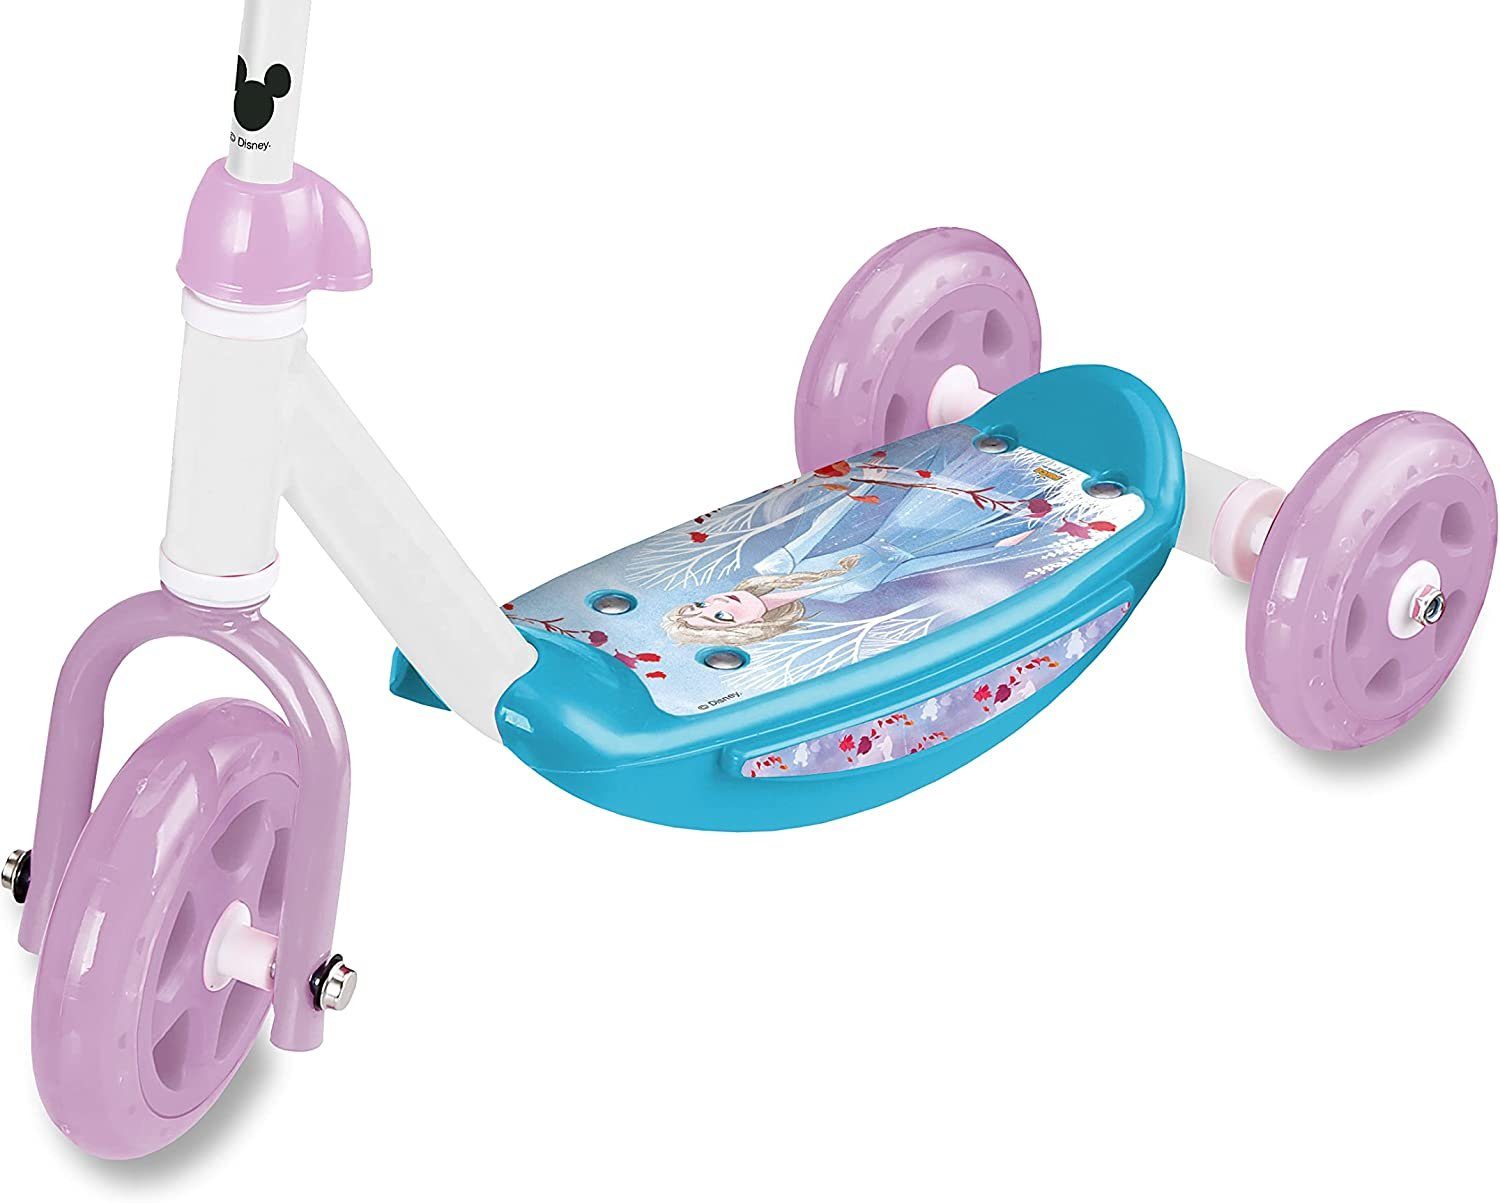 Lenker Frozen Motiv Toys Tretroller, Dreirad Eiskönigin Eiskönigin am Disney Saica Tretroller